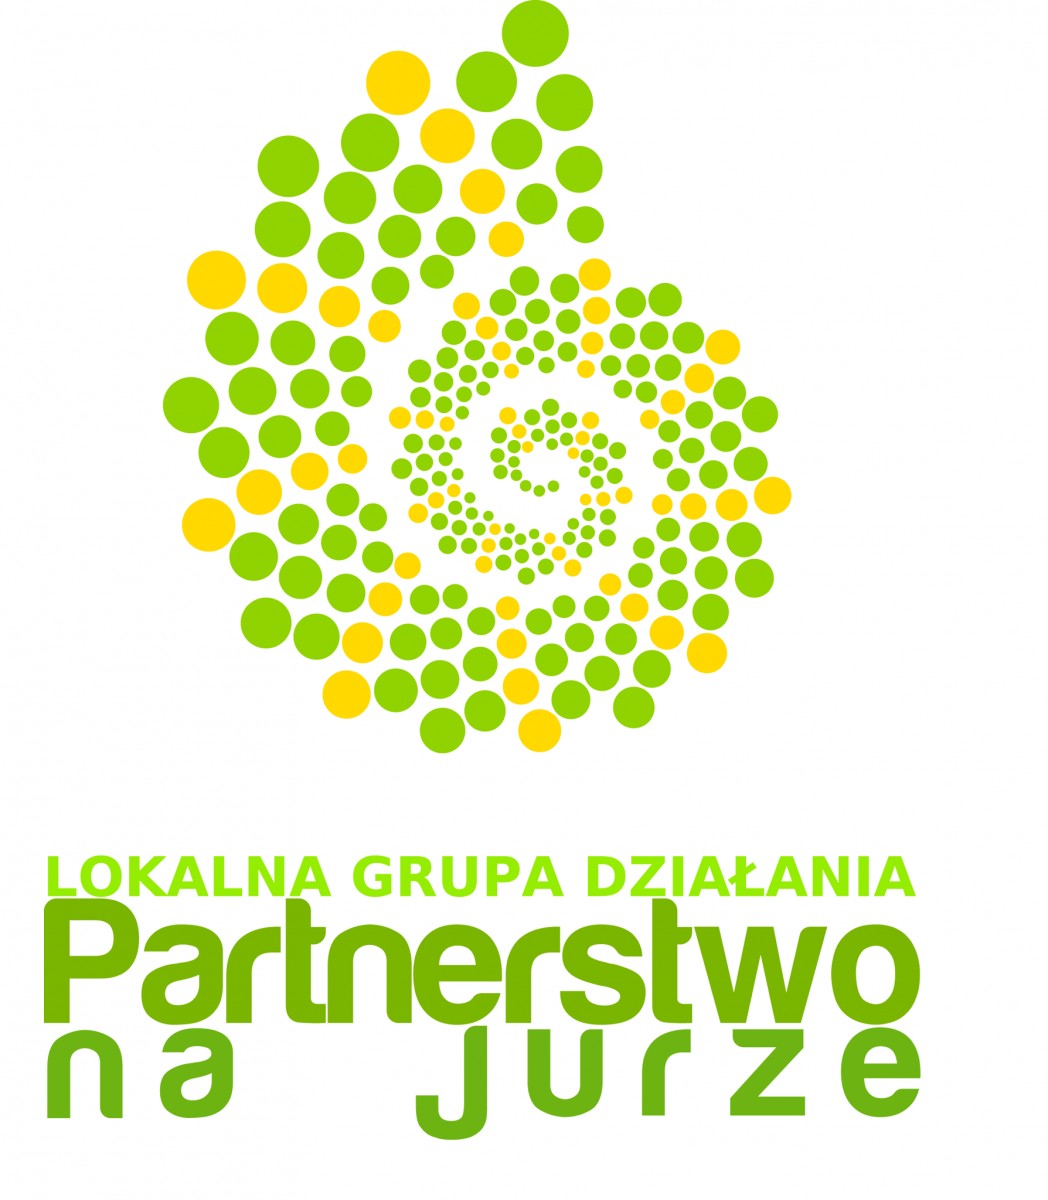 logo LGD partnerstwo na jurze, logo ma kształt muszli ślimaka , składa się z różnej wielkości kropek żółtych i zieolnych